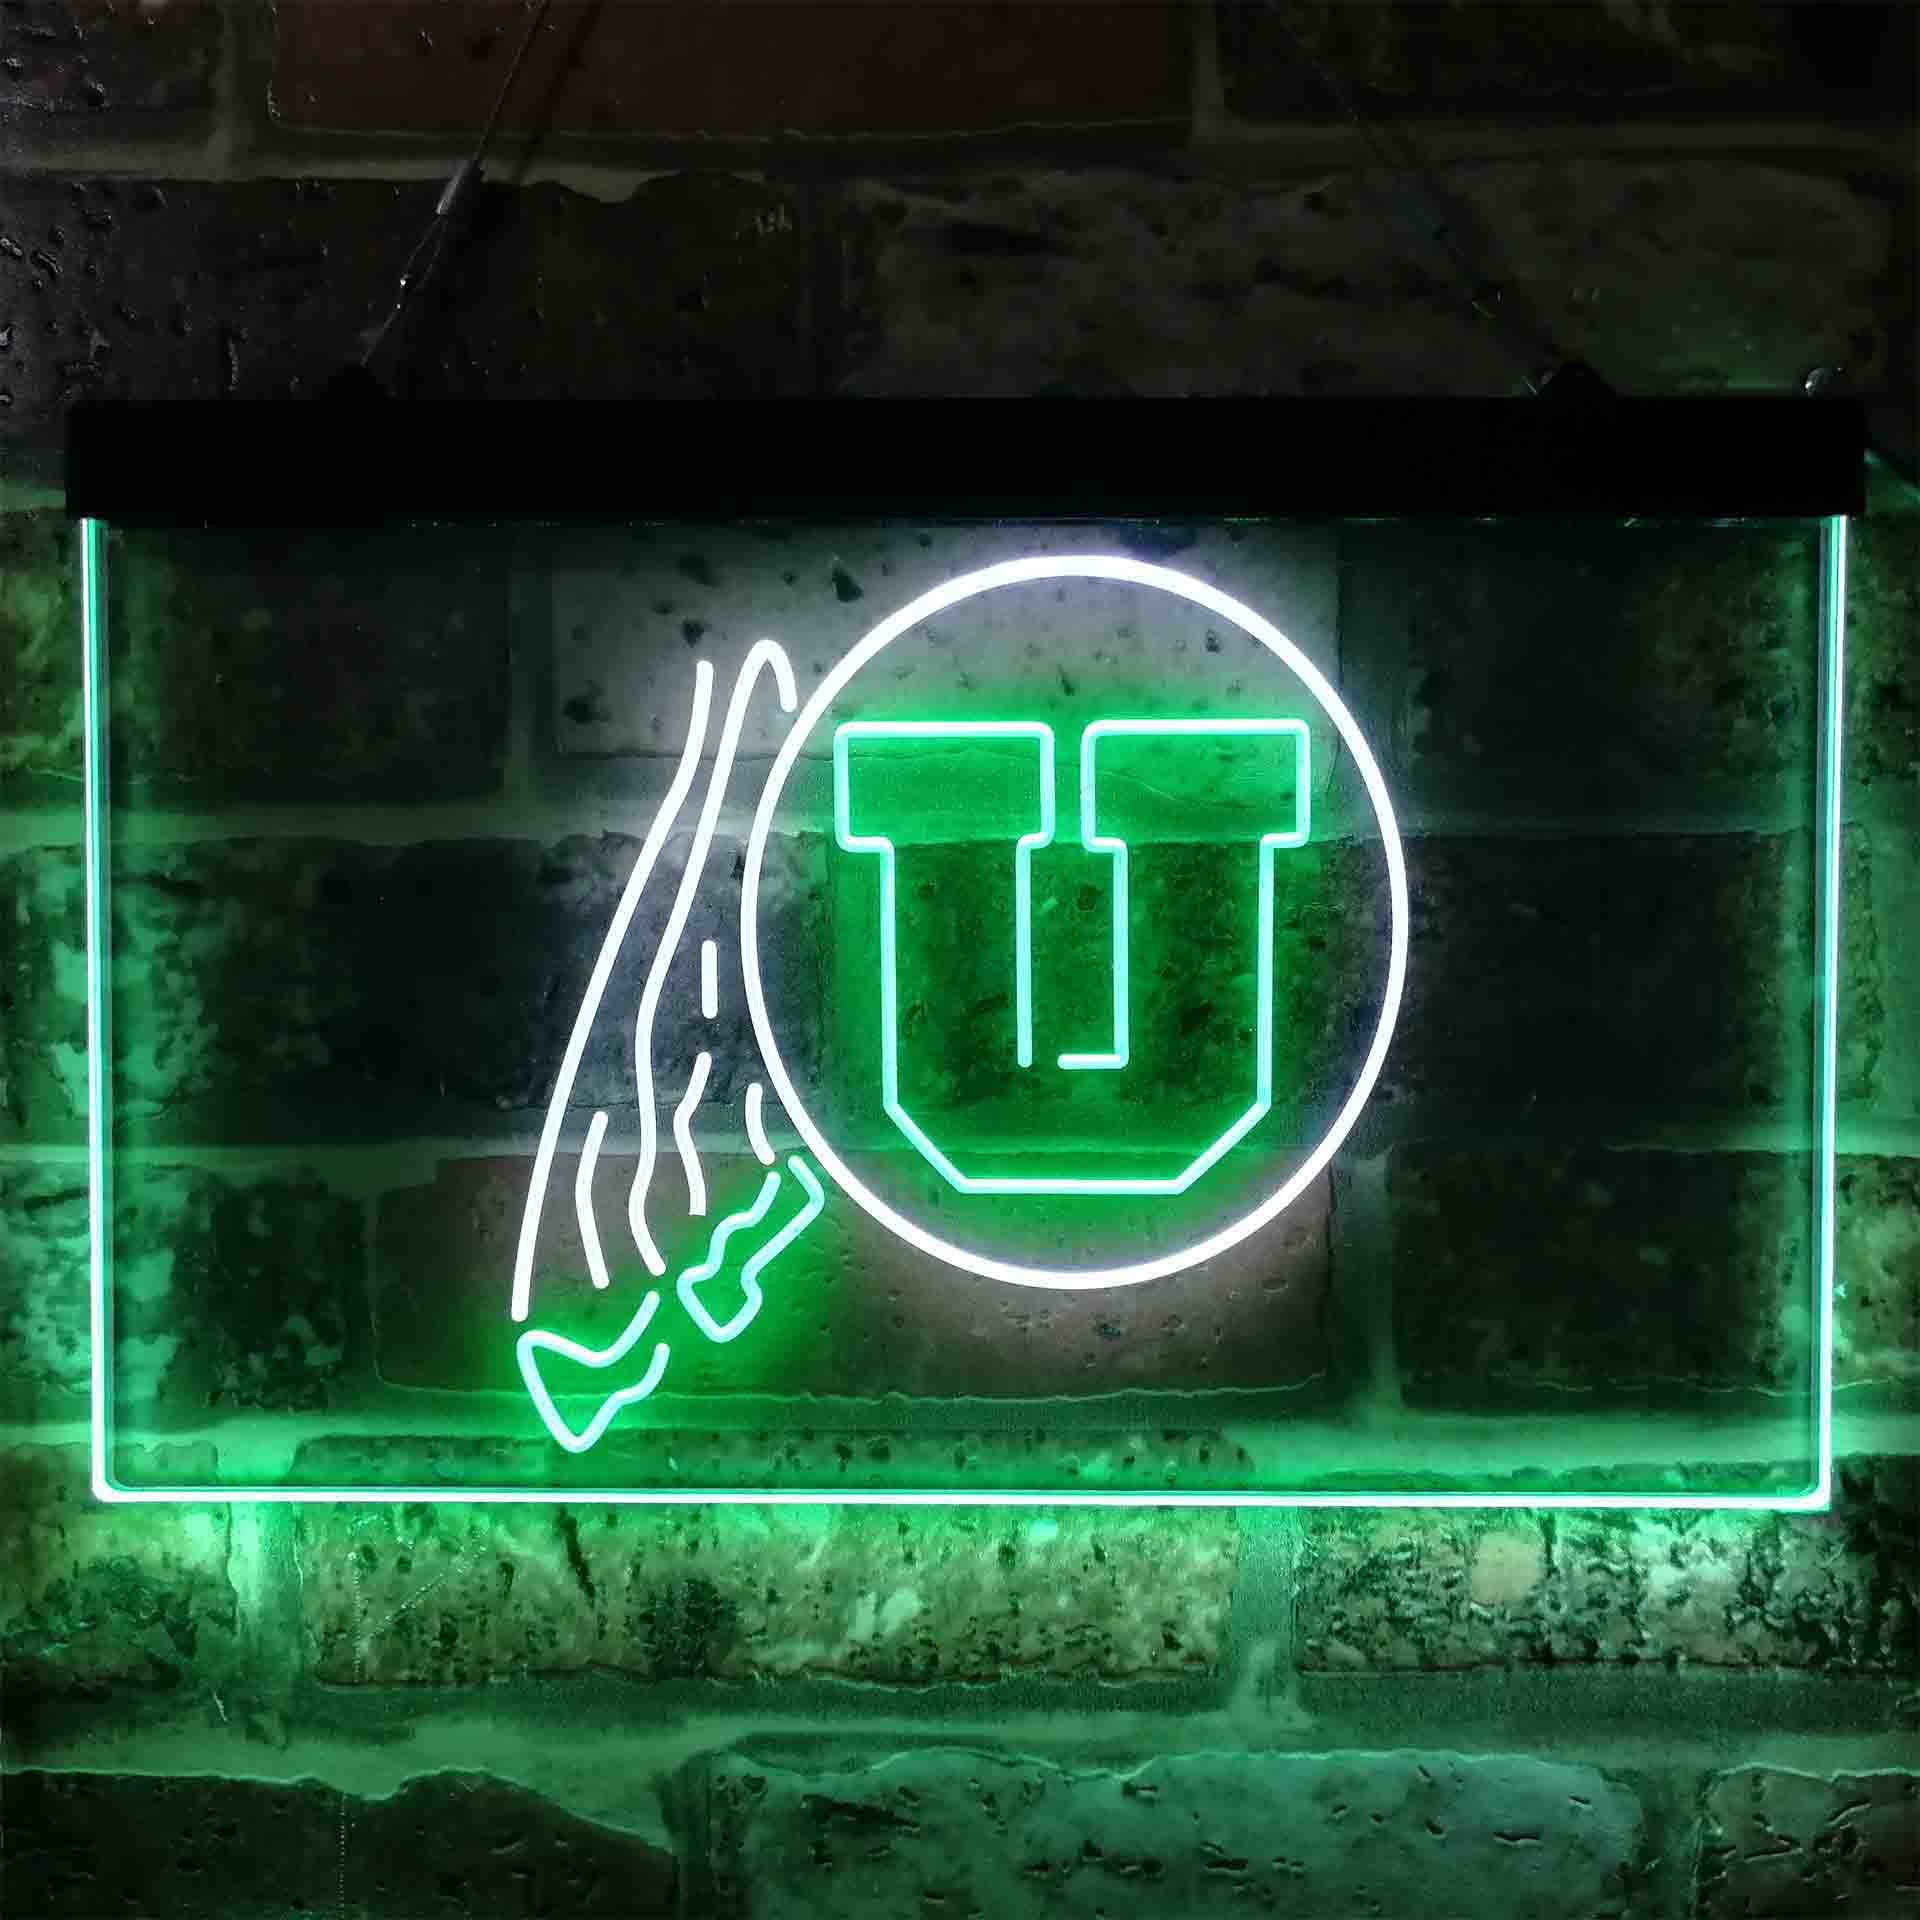 University Football Sport Team UU LED Neon Sign